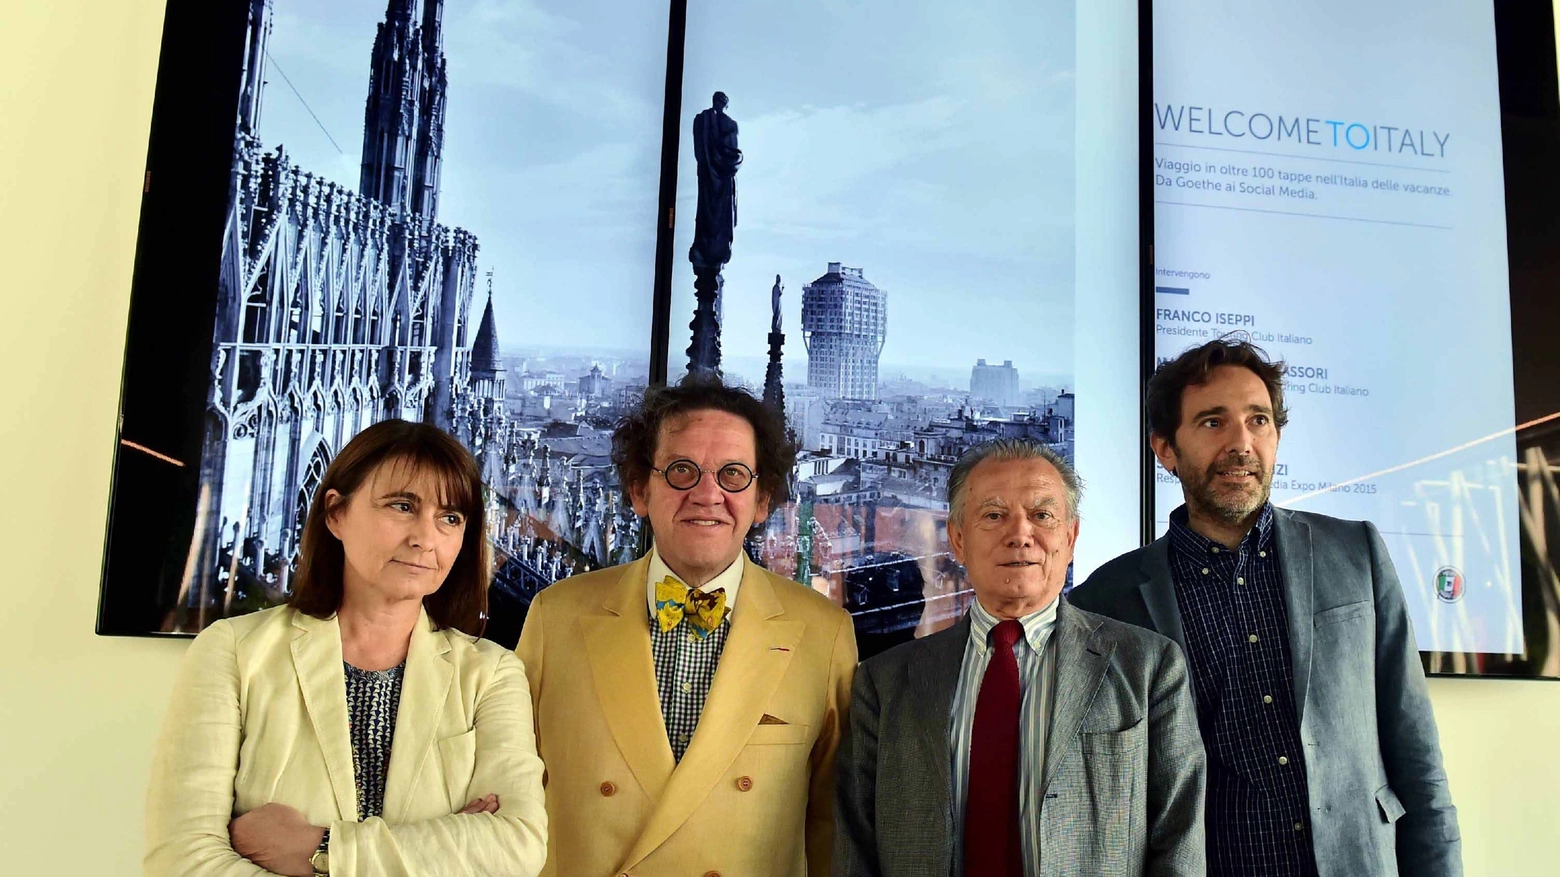 Da sinistra: Susanna Legrenzi, Philippe Daverio, Franco Iseppi e Massimiliano Vavassori (Fotogramma)